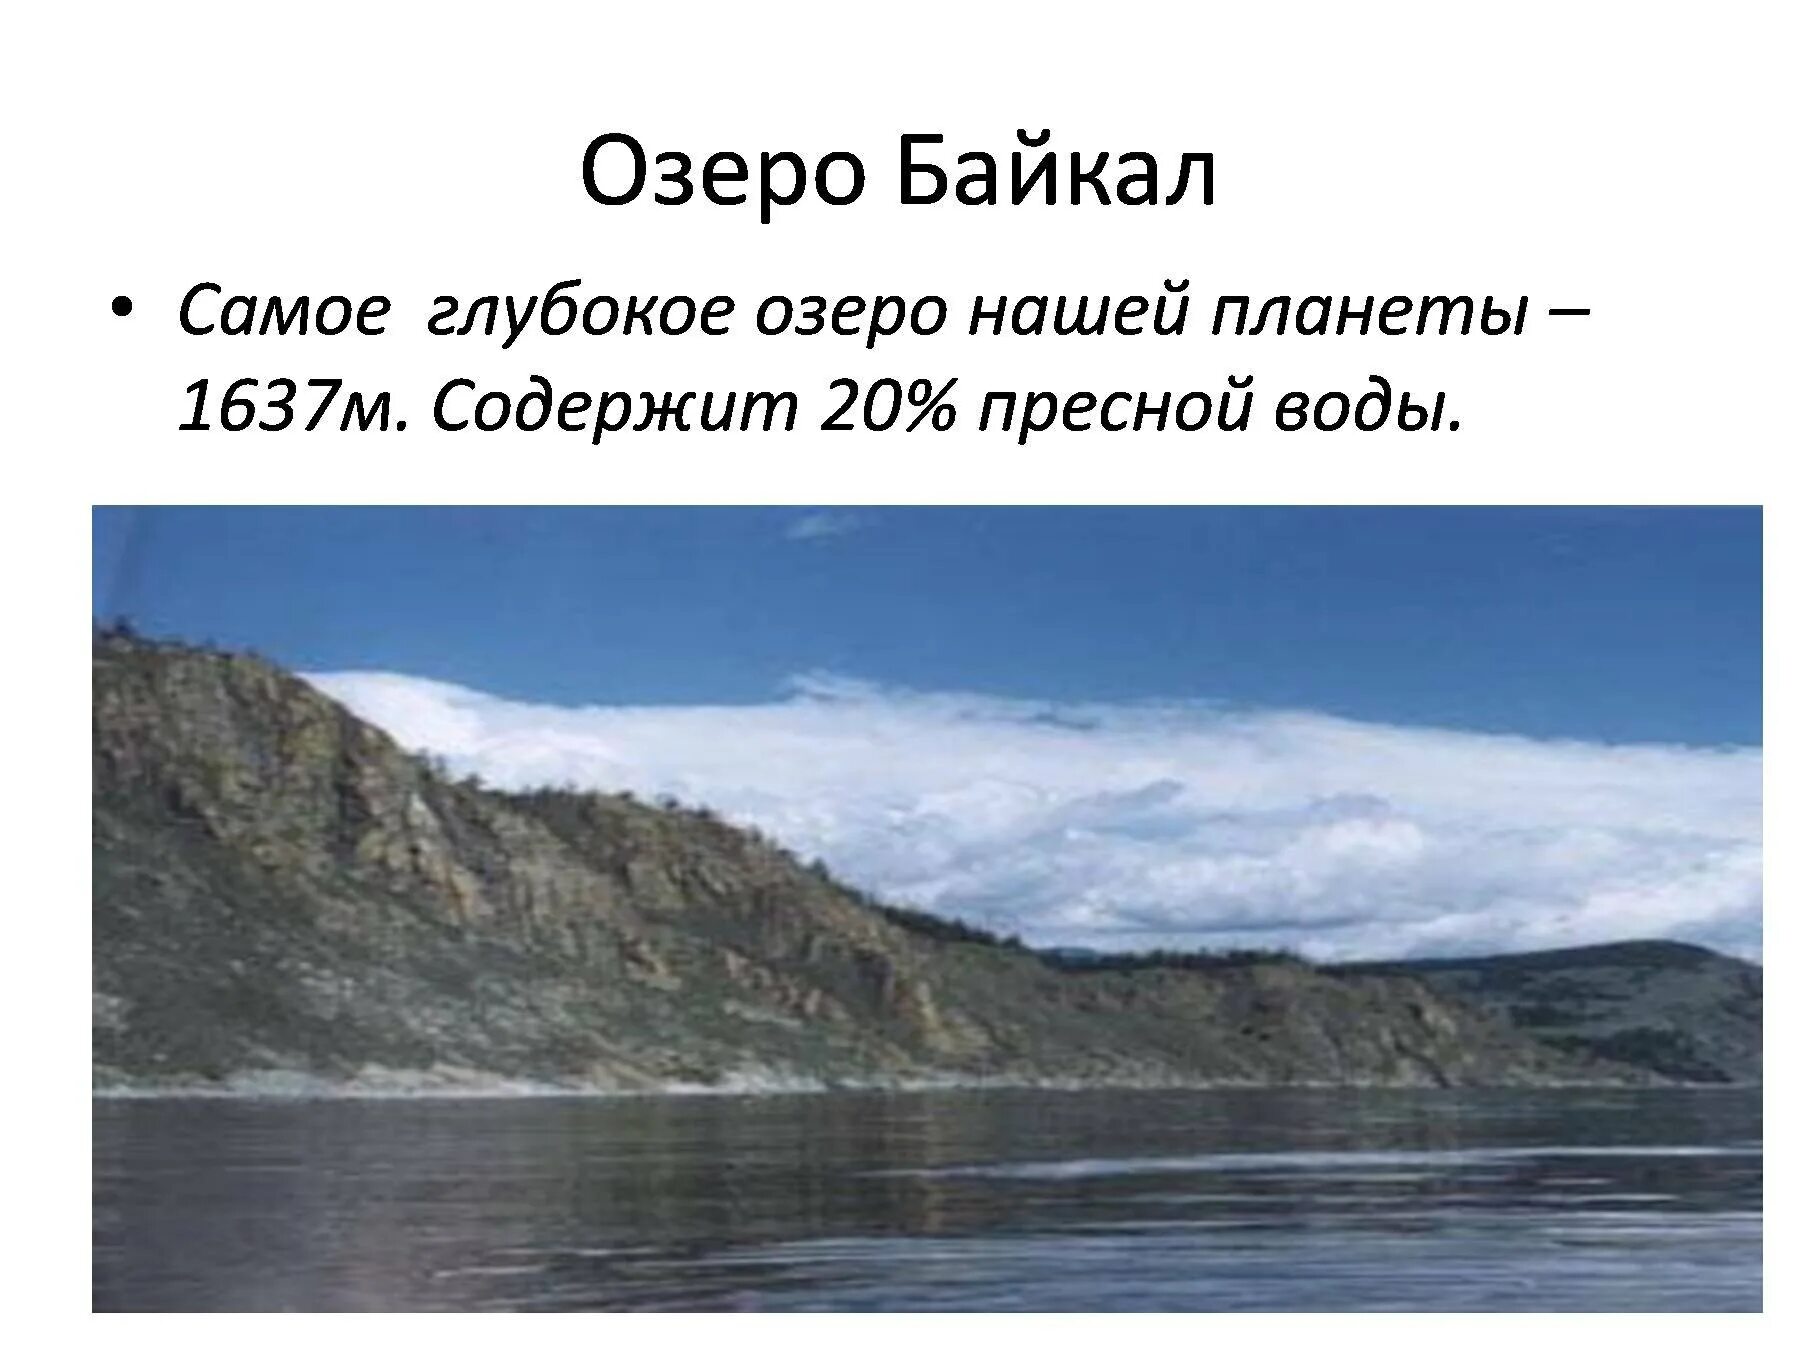 Самое глубокое озеро нашей планеты. Диктант озеро Байкал. Самое глубокое озеро диктант Байкал глубочайшее озеро. Глубина озера Байкал диктант. Байкал самое глубокое озеро задача впр